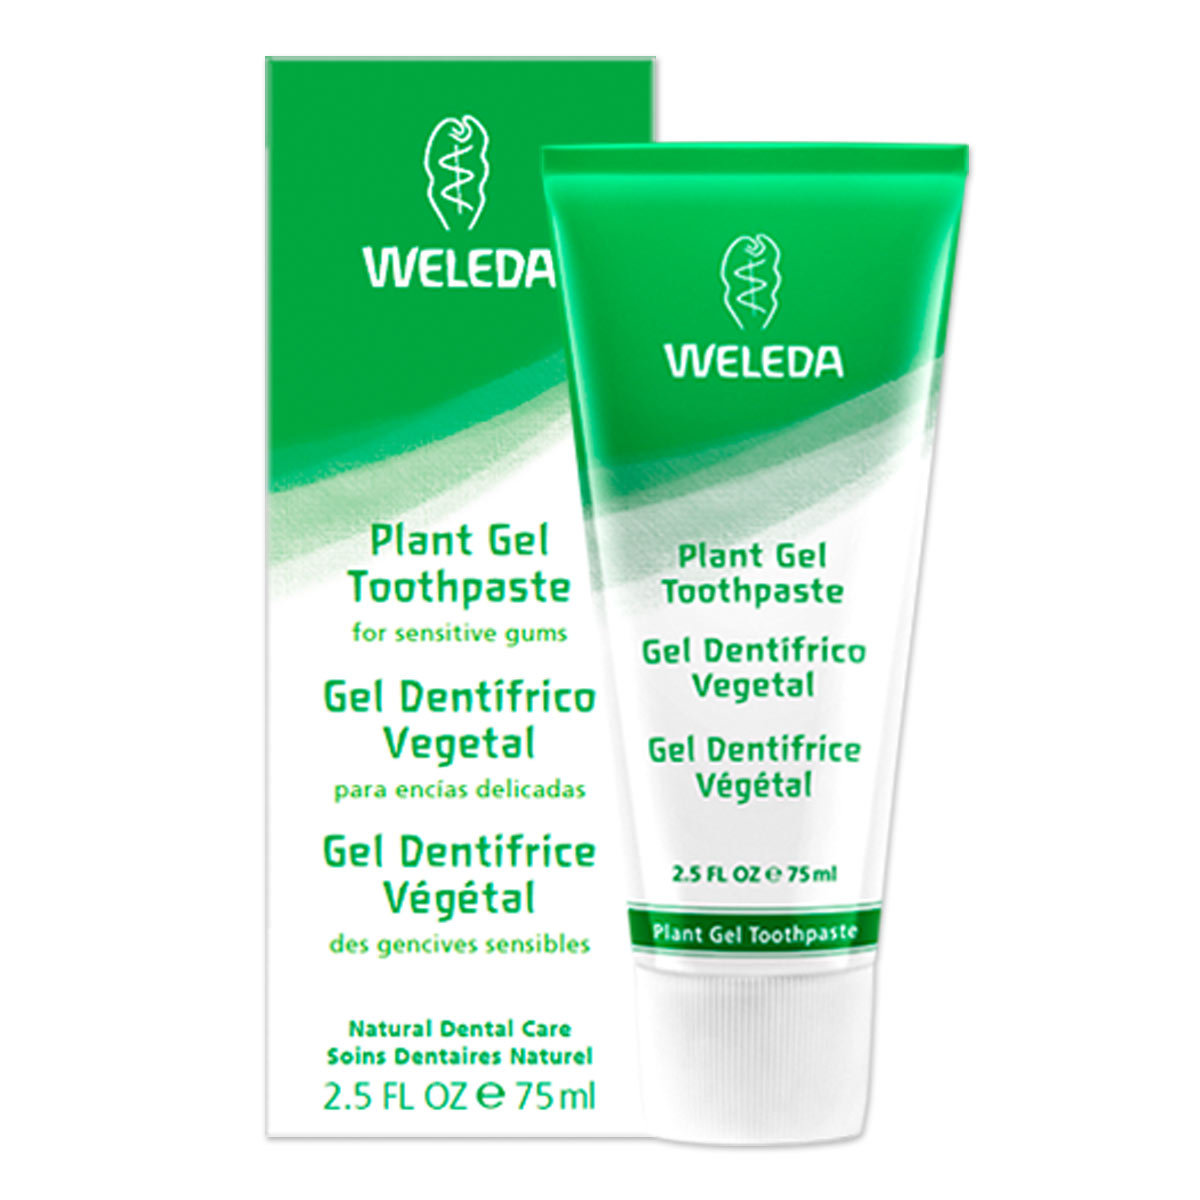 벨레다, 플랜트 젤 치약, Plant Gel Toothpaste, 내추럴 덴탈 케어, 2.5 oz (75 g)